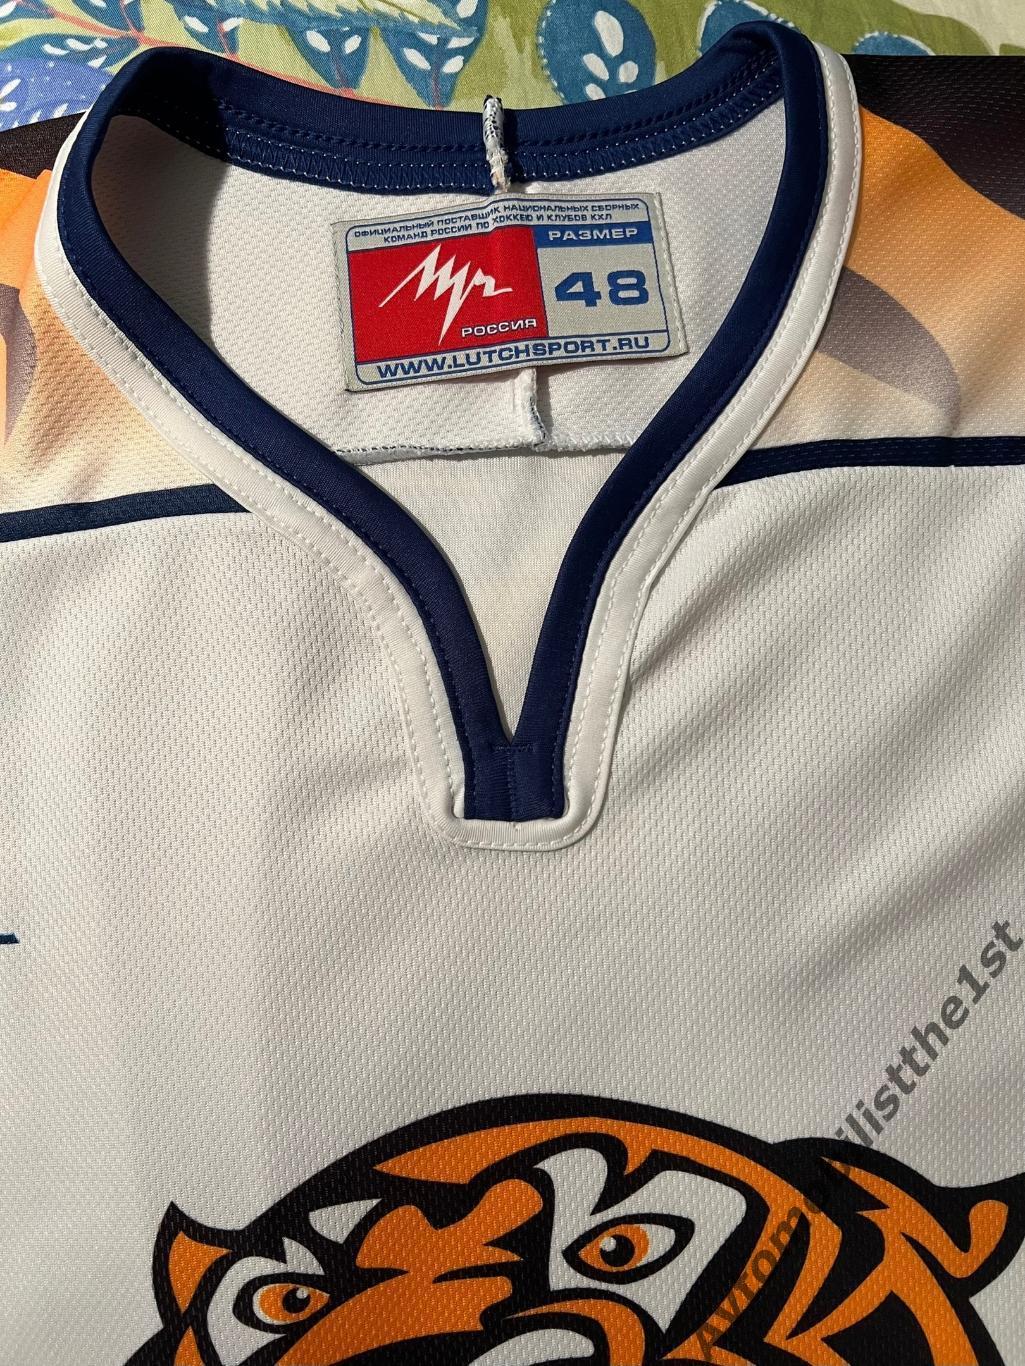 Хоккейный свитер джерси форма МХК Амурские Тигры Хабаровск старый логотип 2